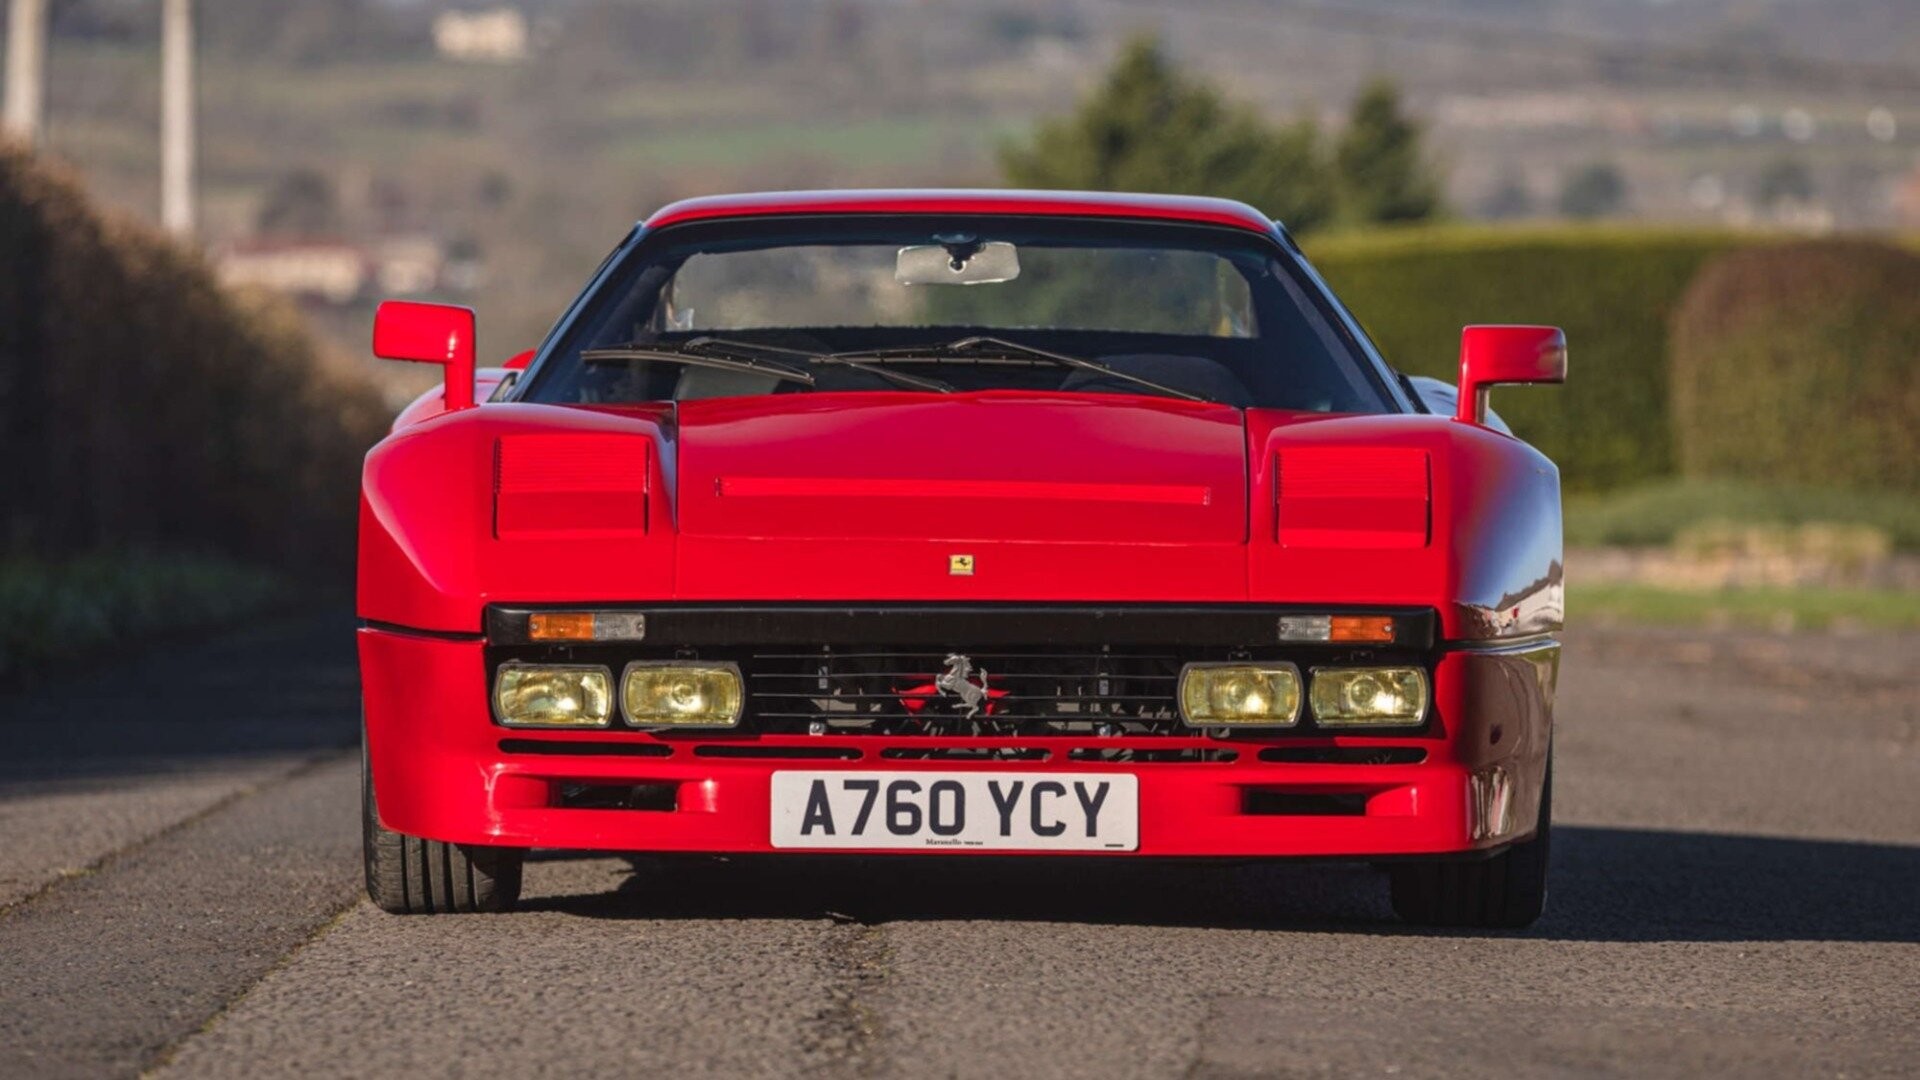 Качественная реплика ультраредкого Ferrari 288 GTO